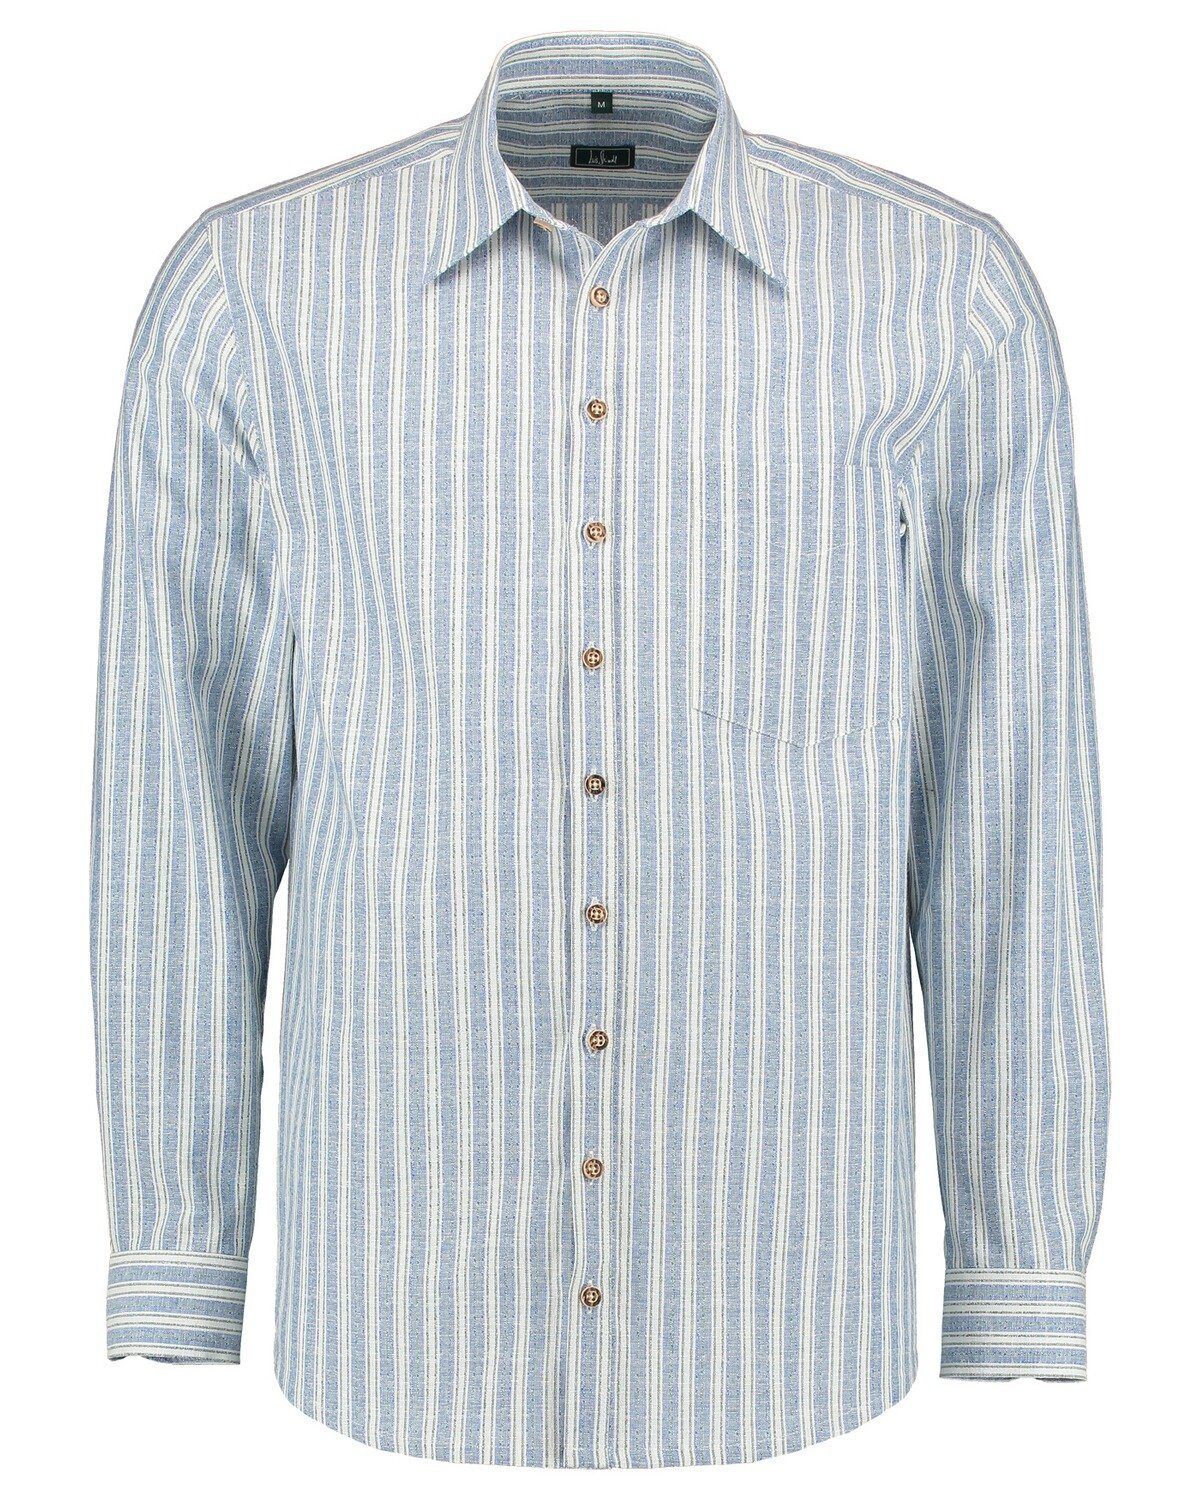 Luis Steindl Trachtenhemd Blau Streifen mit Trachtenhemd